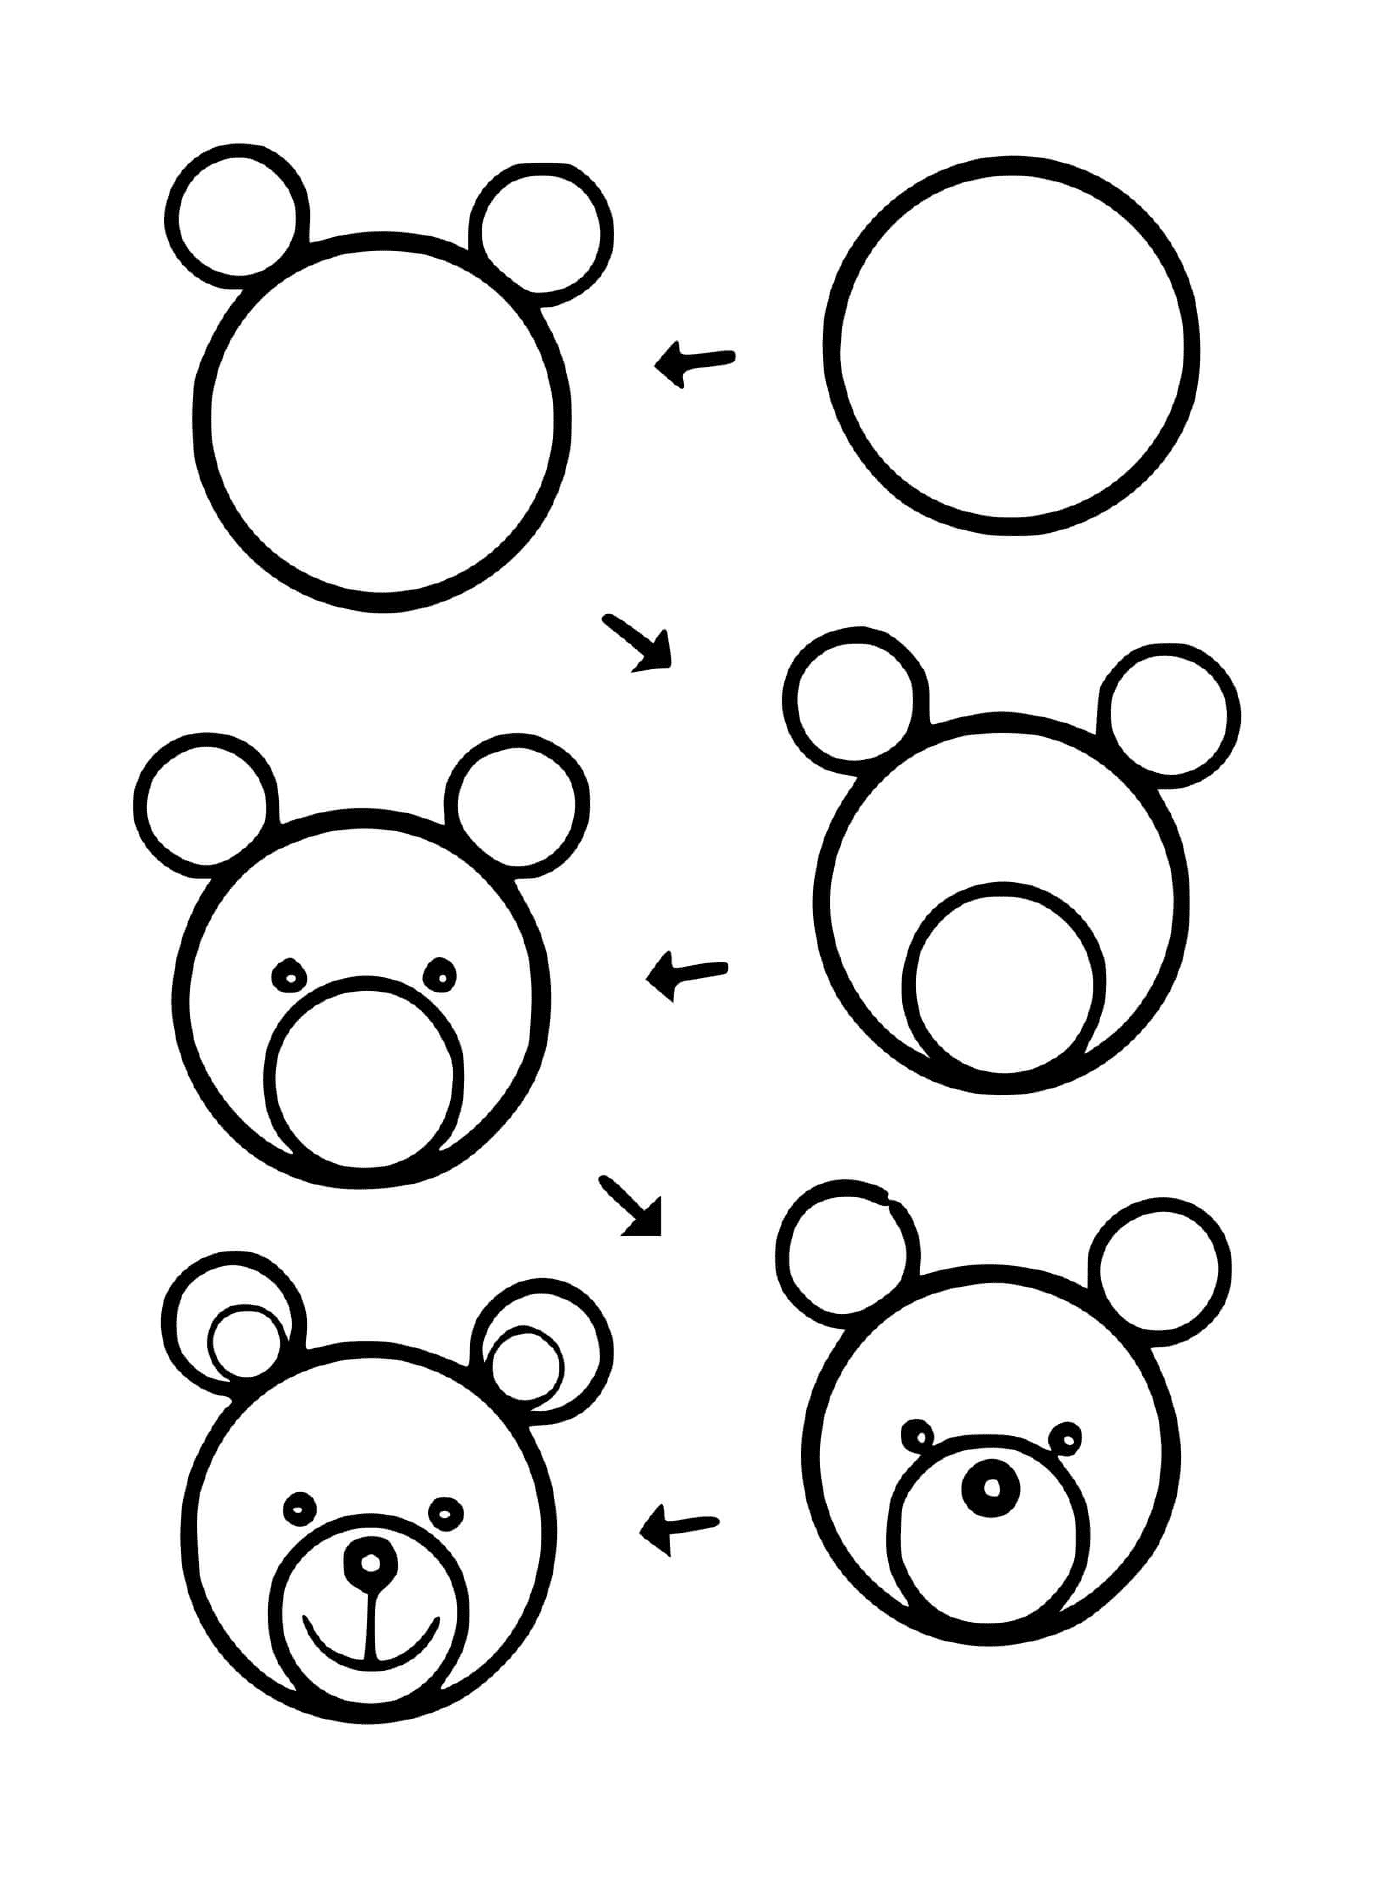  很容易画泰迪熊 